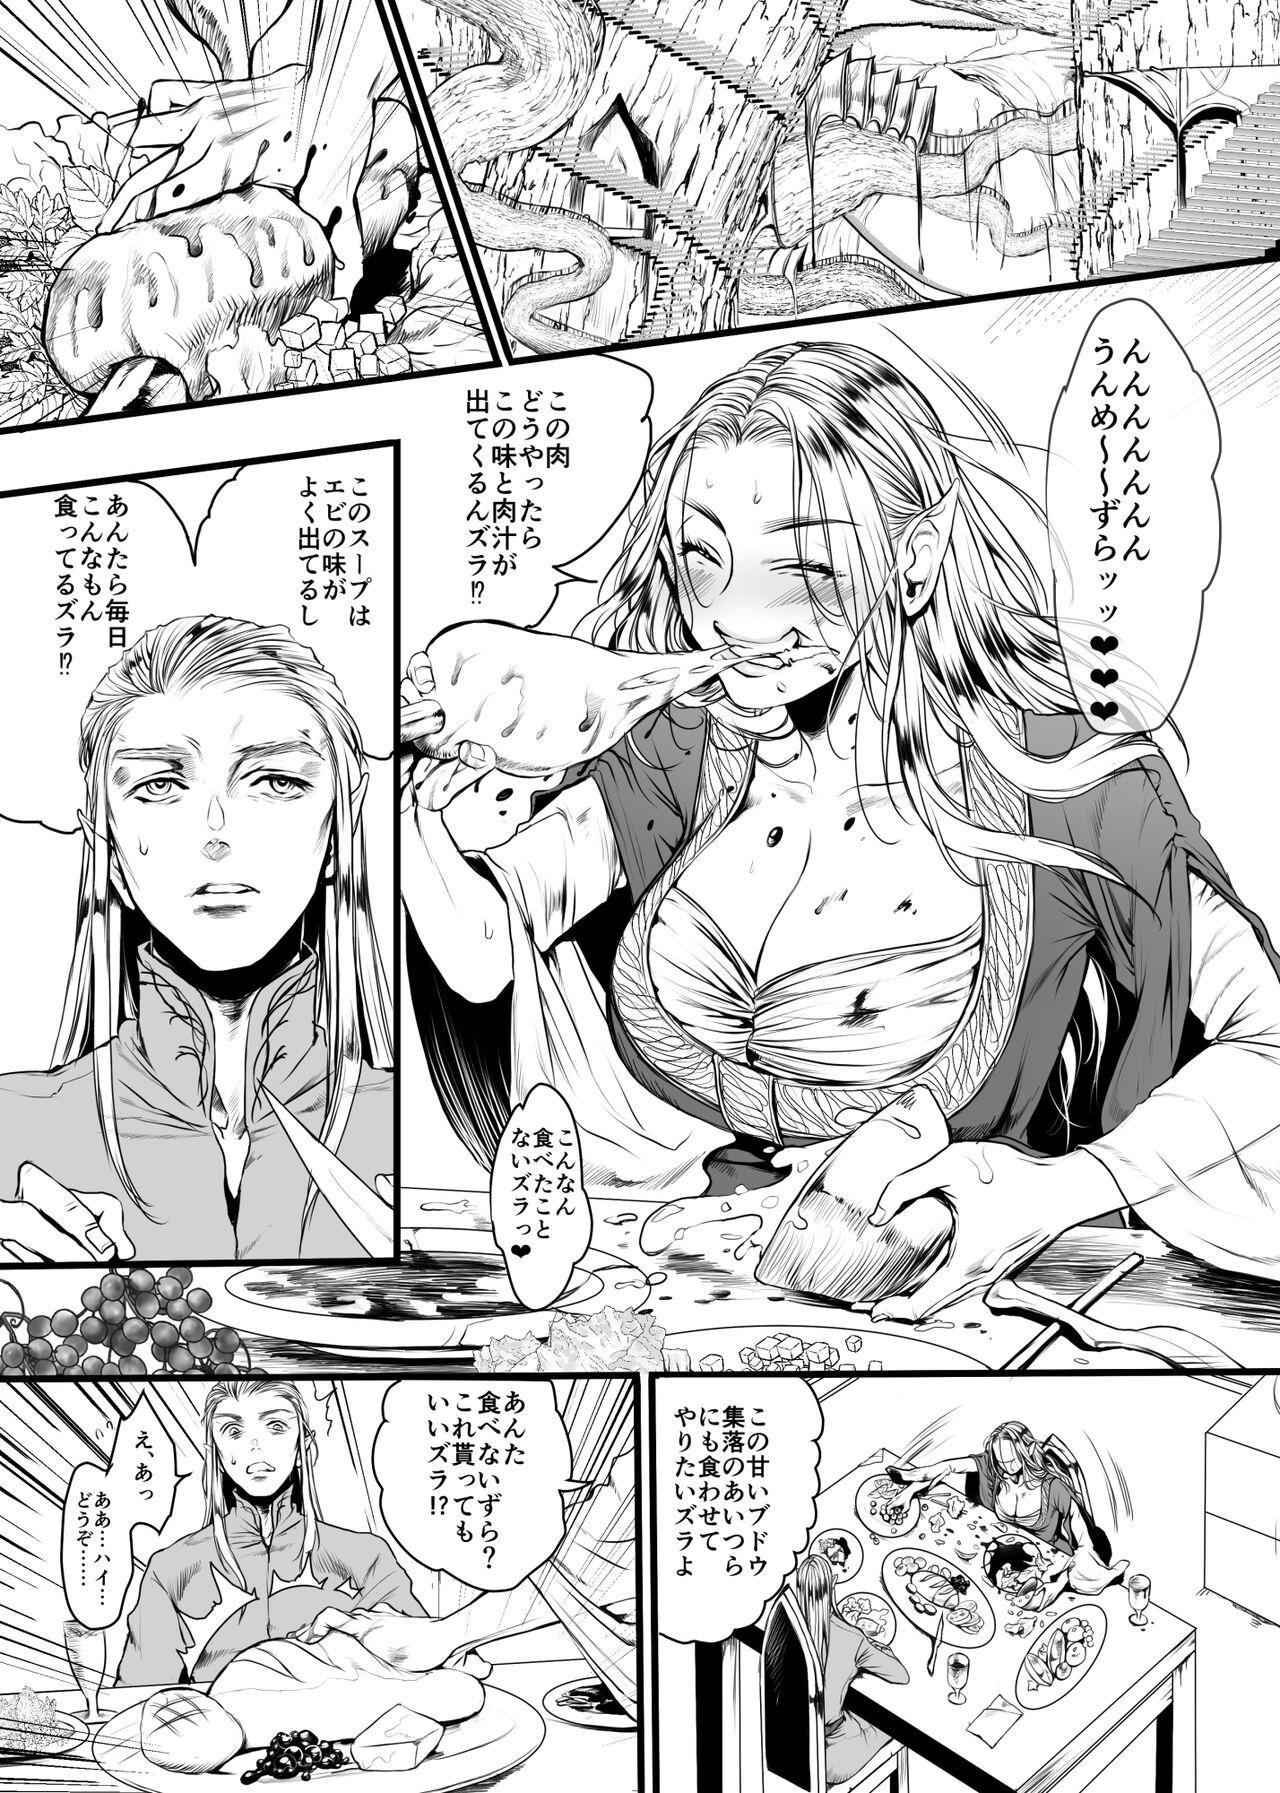 Bra Kansei wo Akiramta TSF Manga Jacking Off - Page 6